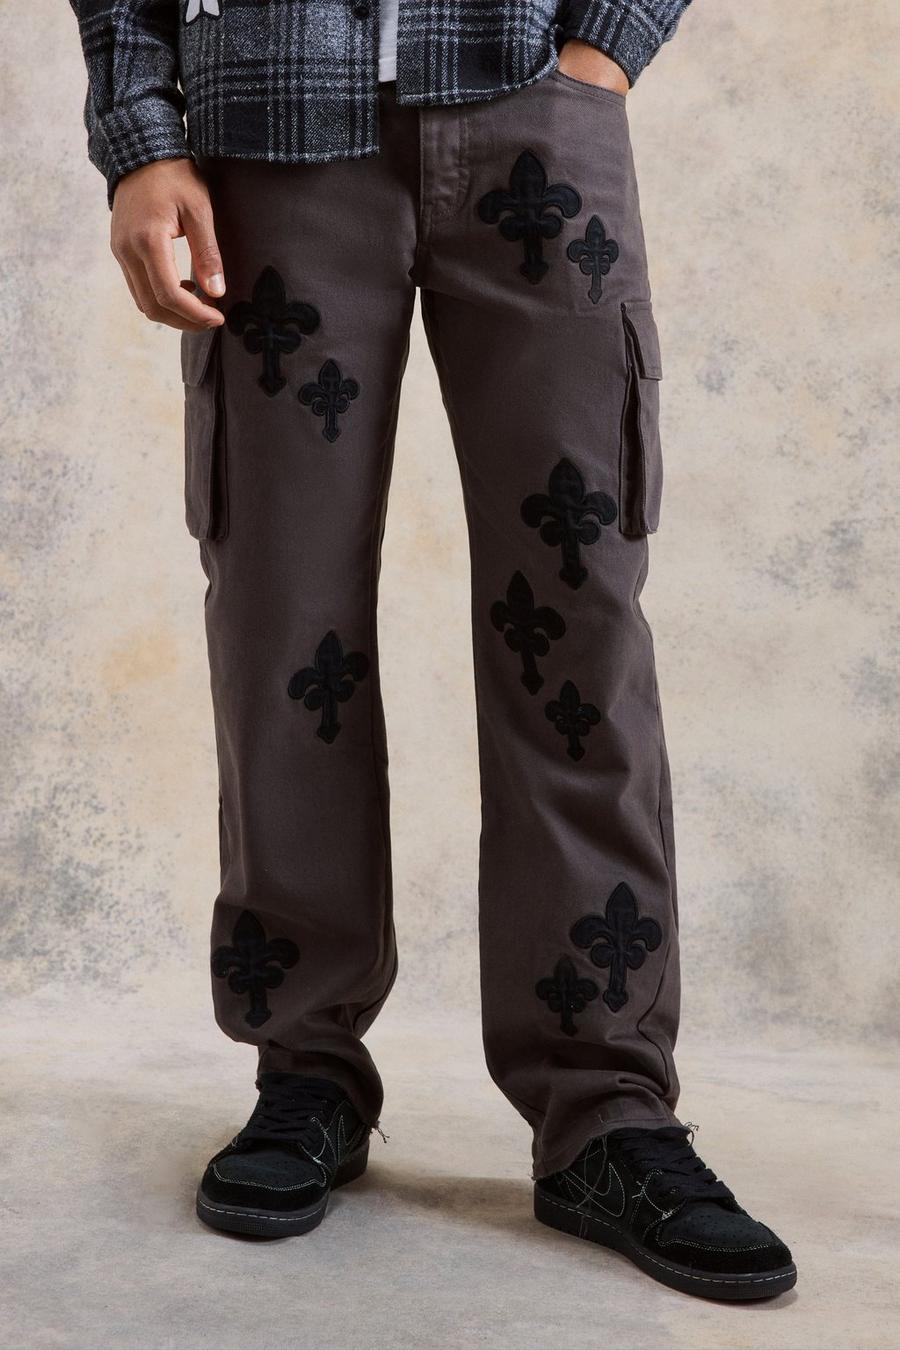 Pantalón cargo holgado con apliques, refuerzos y cintura fija, Charcoal gris